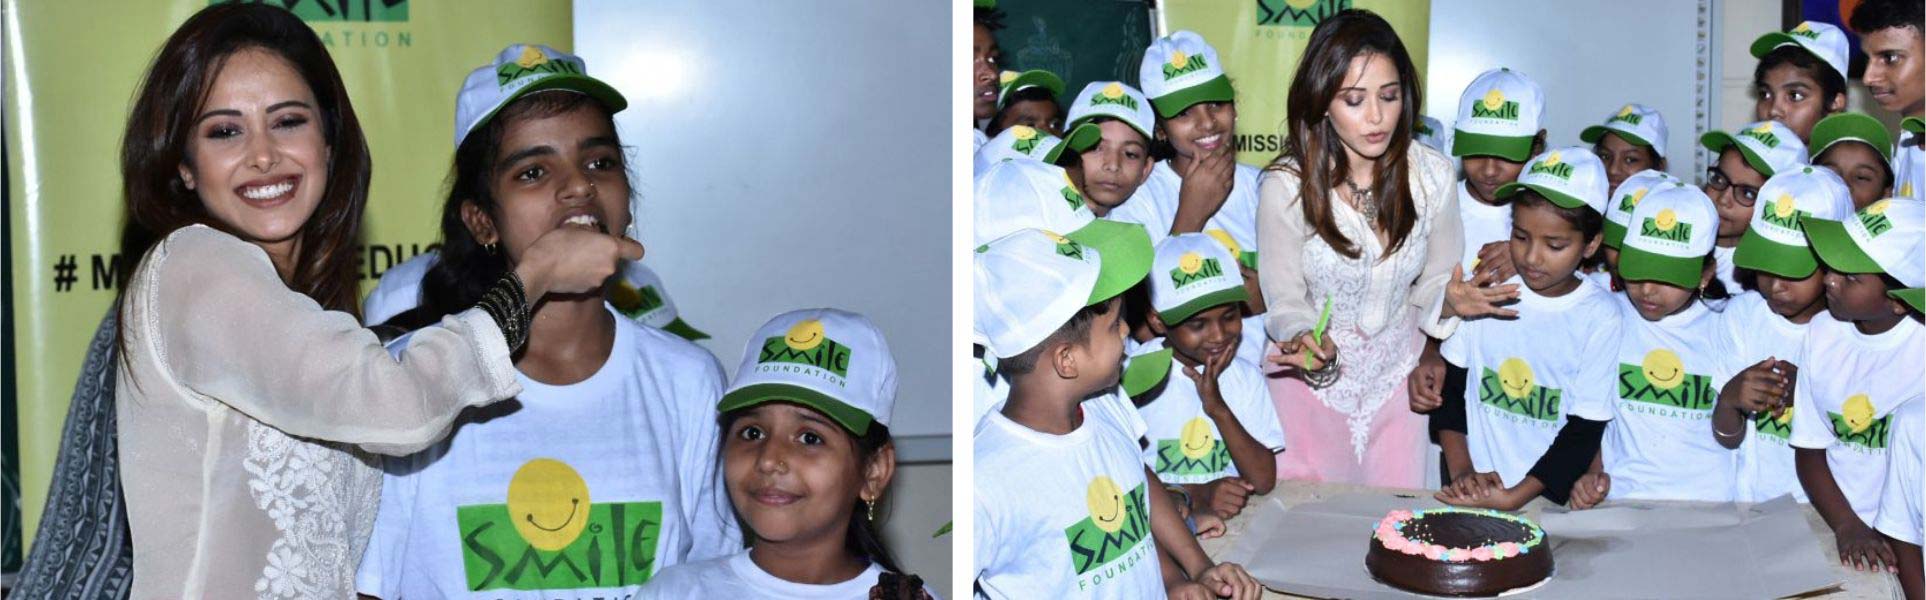 Nushrat Bharucha celebrates her birthday with Smile Foundation kids